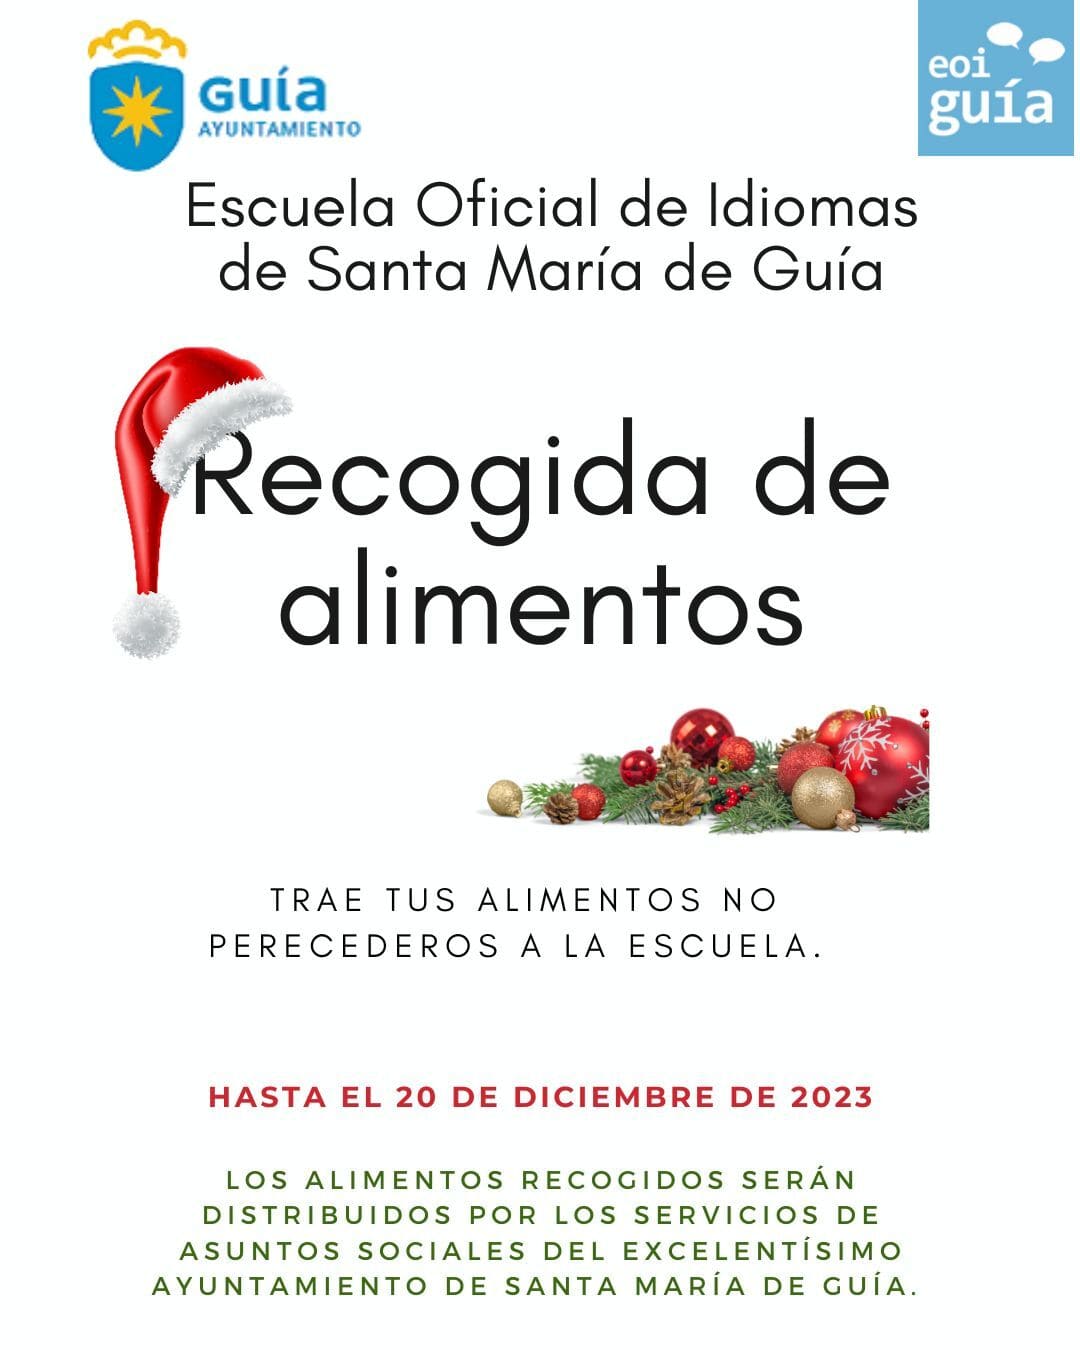 La Escuela Oficial de Idiomas de Santa María de Guía organiza una recogida solidaria de alimentos